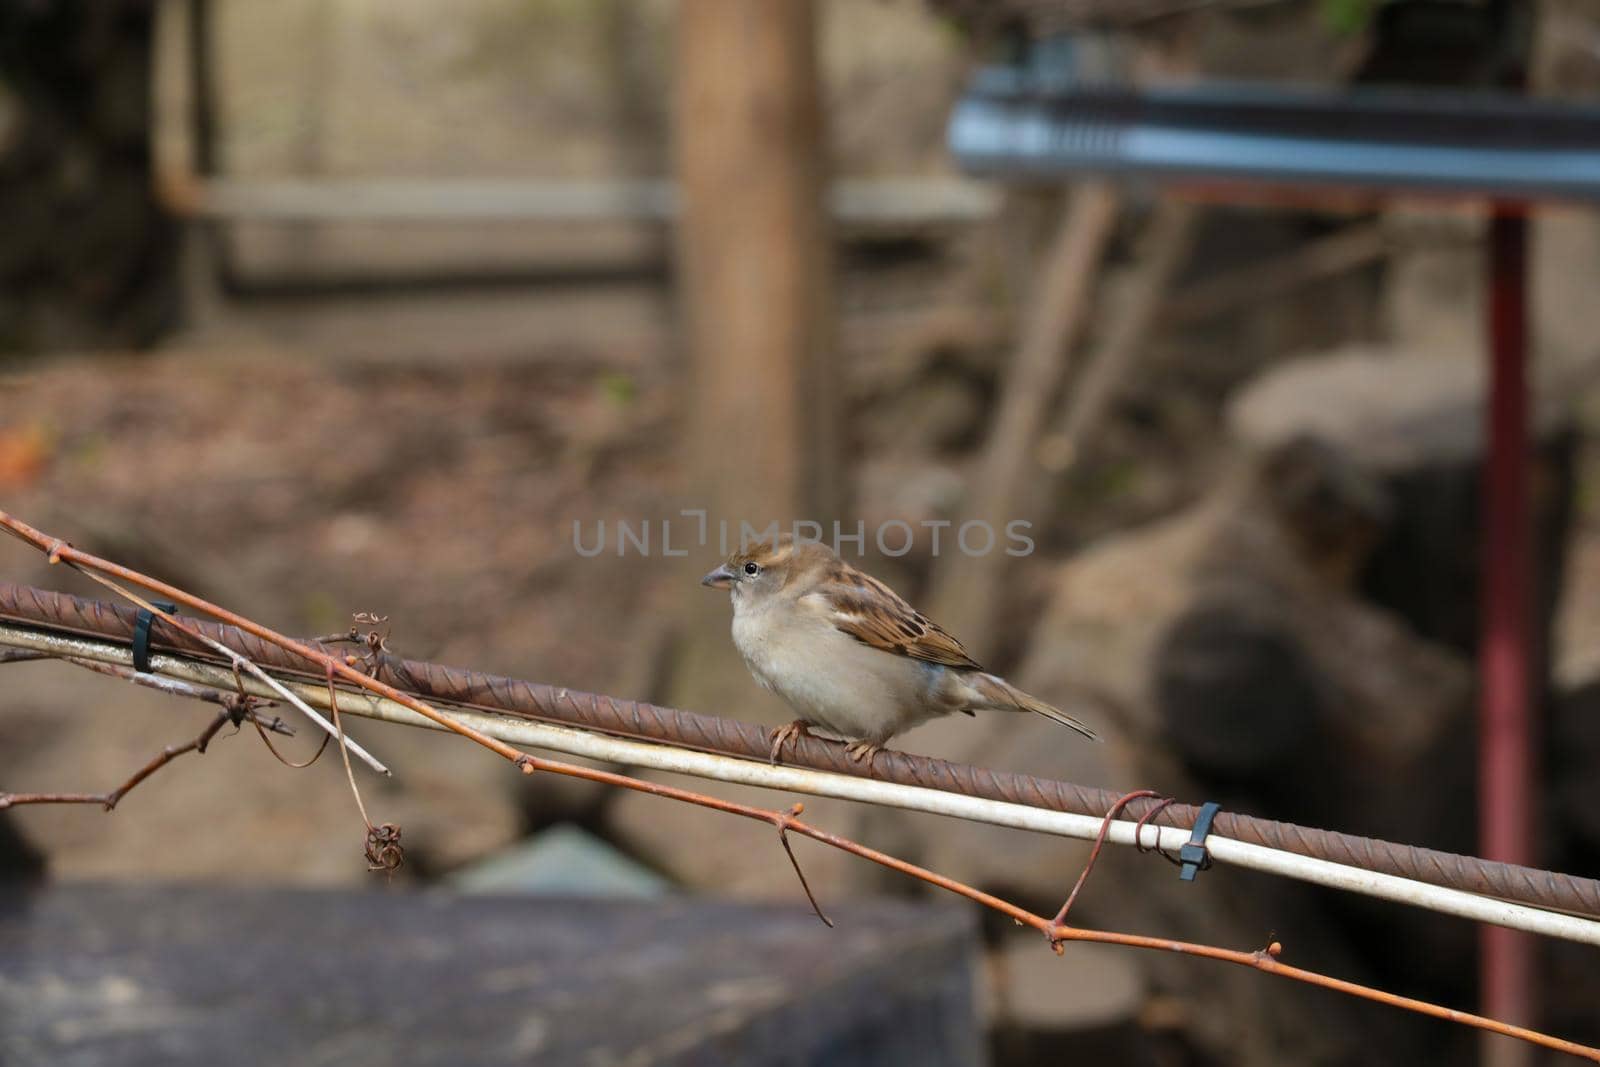 A sparrow sits on an iron bar